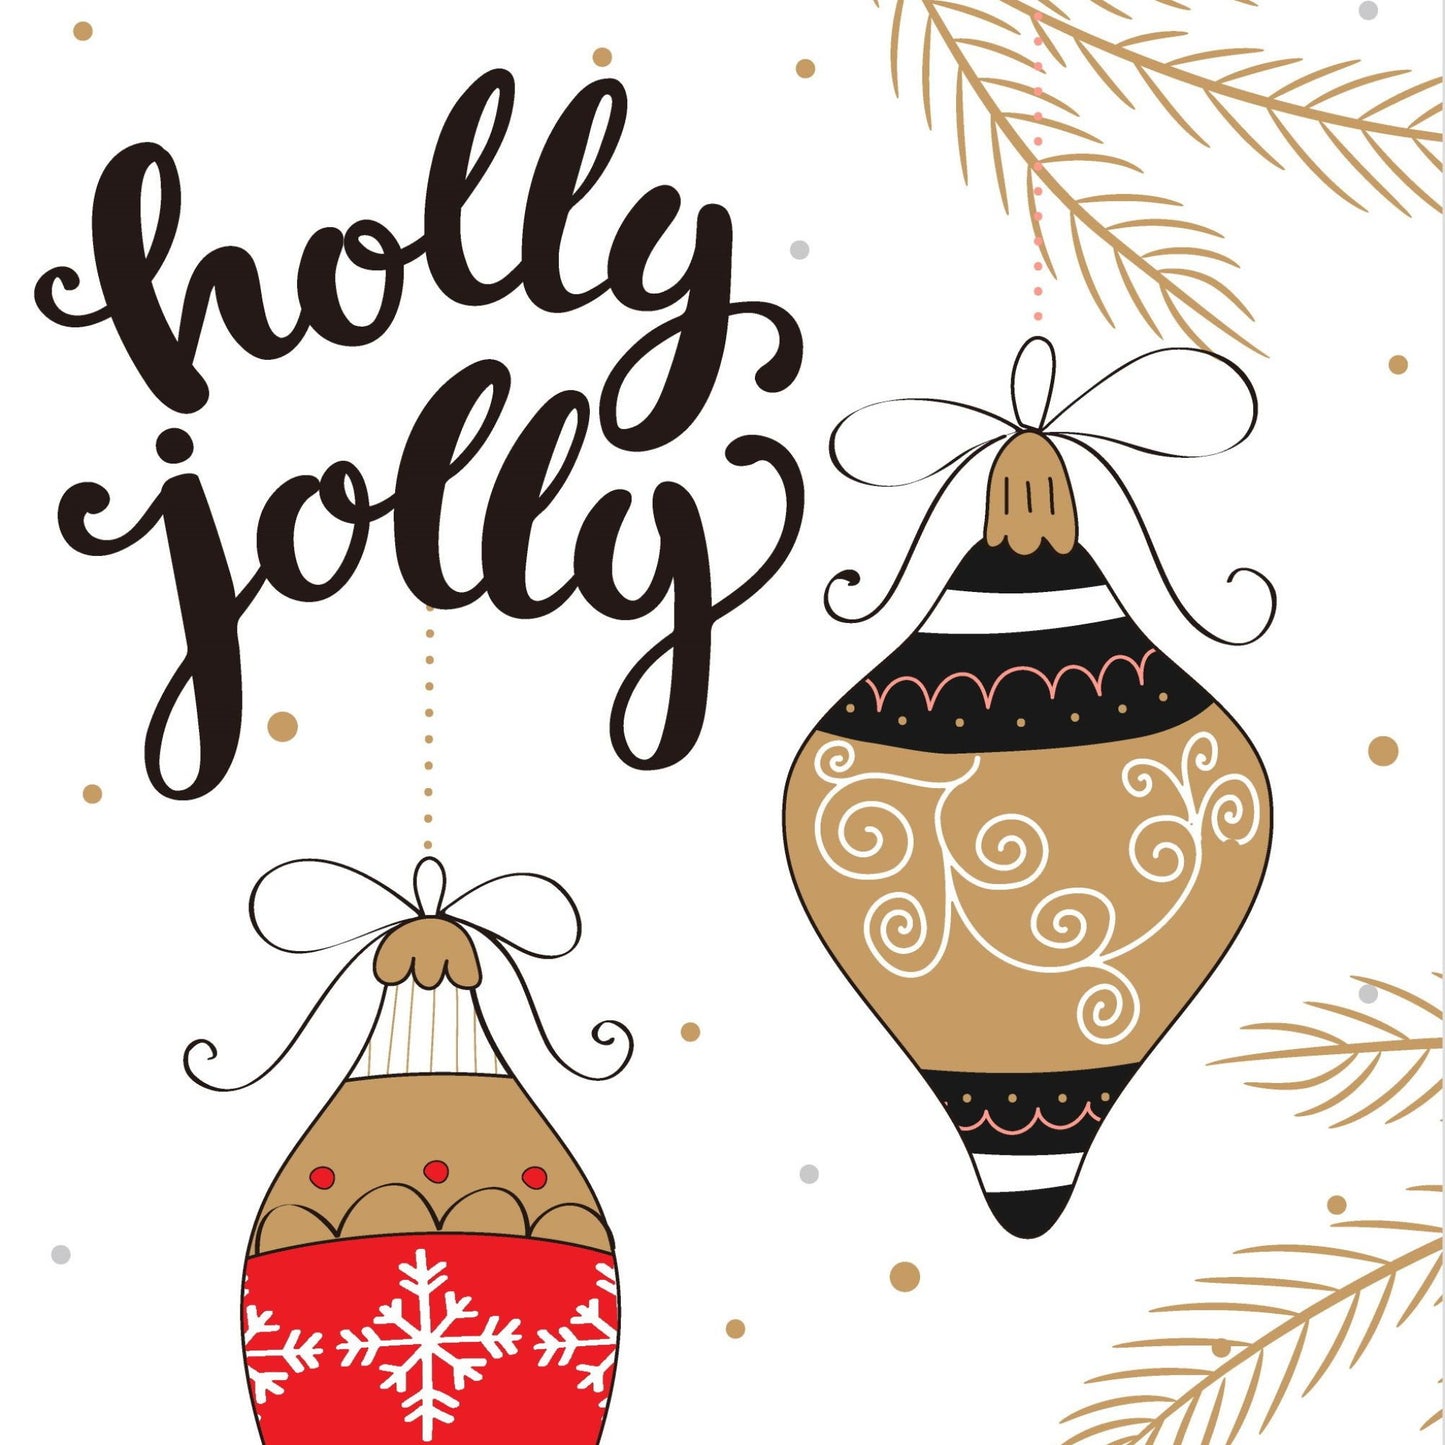 Søte julekort i håndtegnet cartoon. 10 pk. Fargemyanser i rød, grå, sort, hvit og gull. motiv av to julekuler. Tekst på kort"holly jolly"